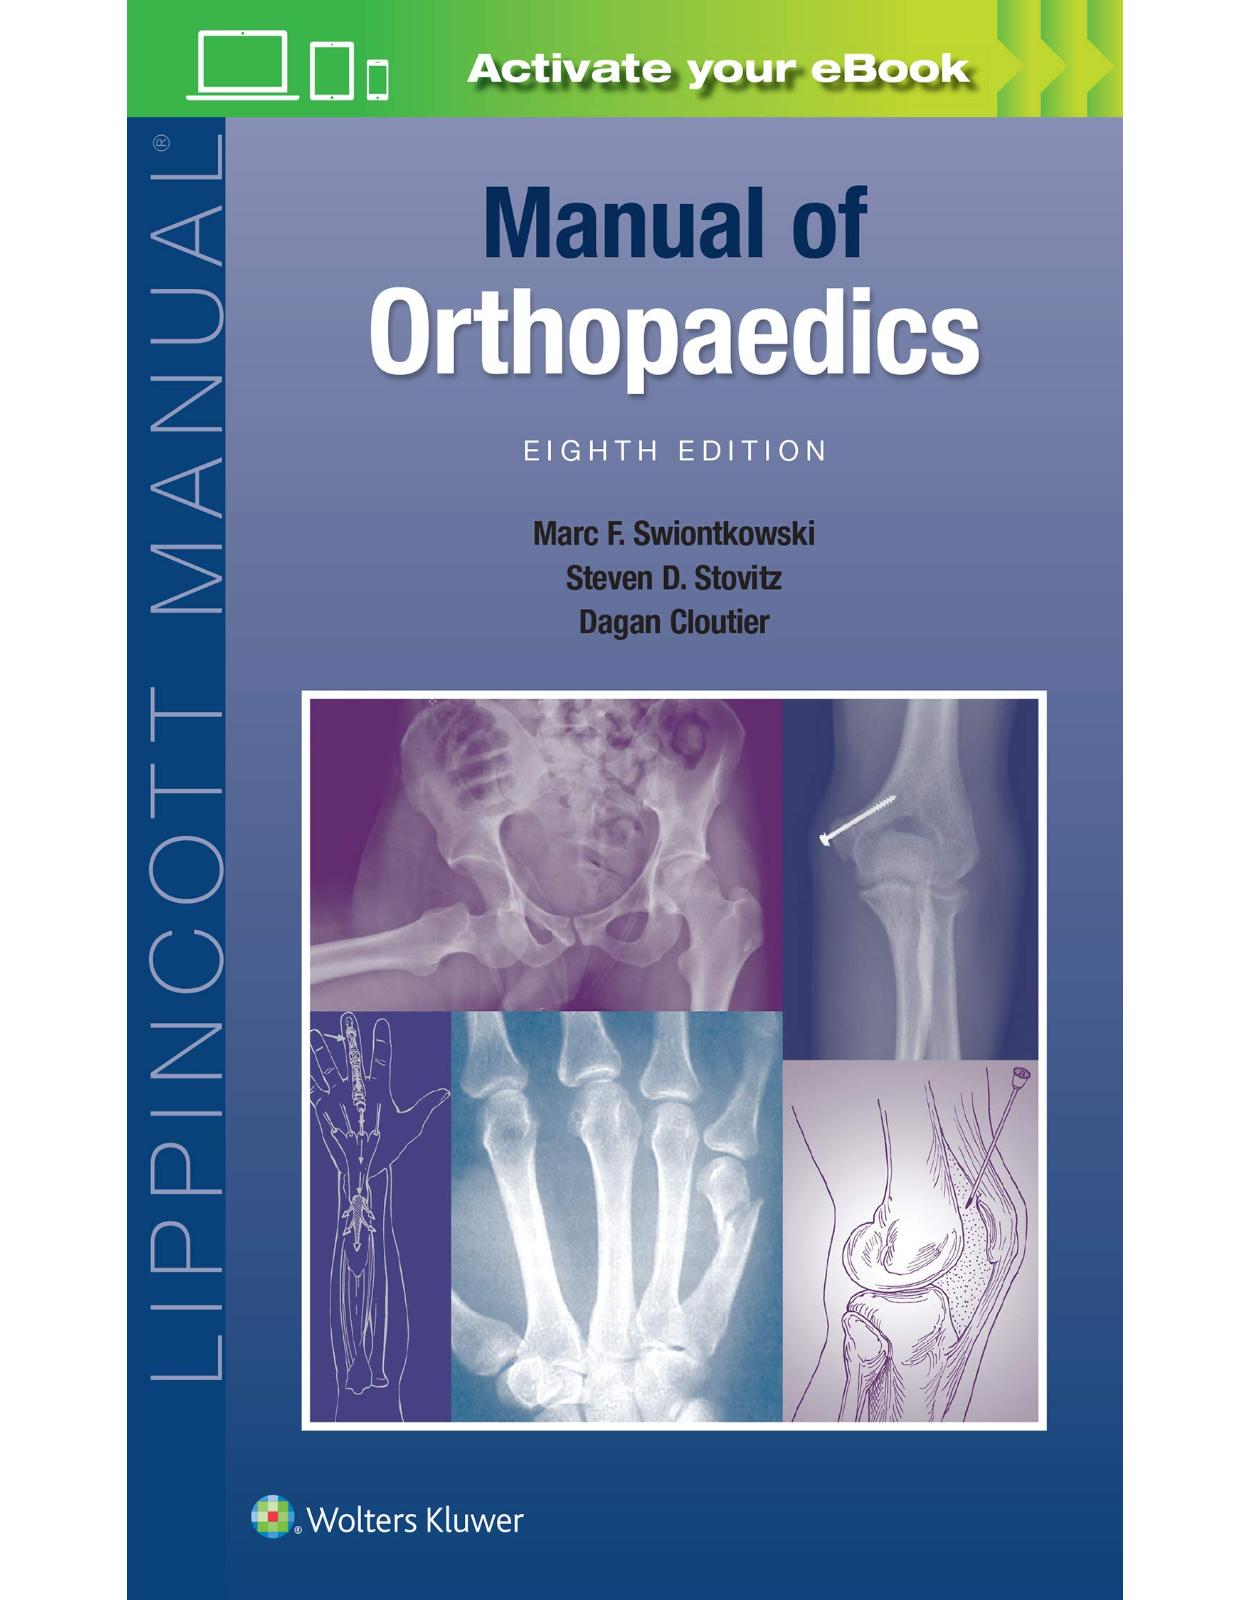 Manual of Orthopaedics 